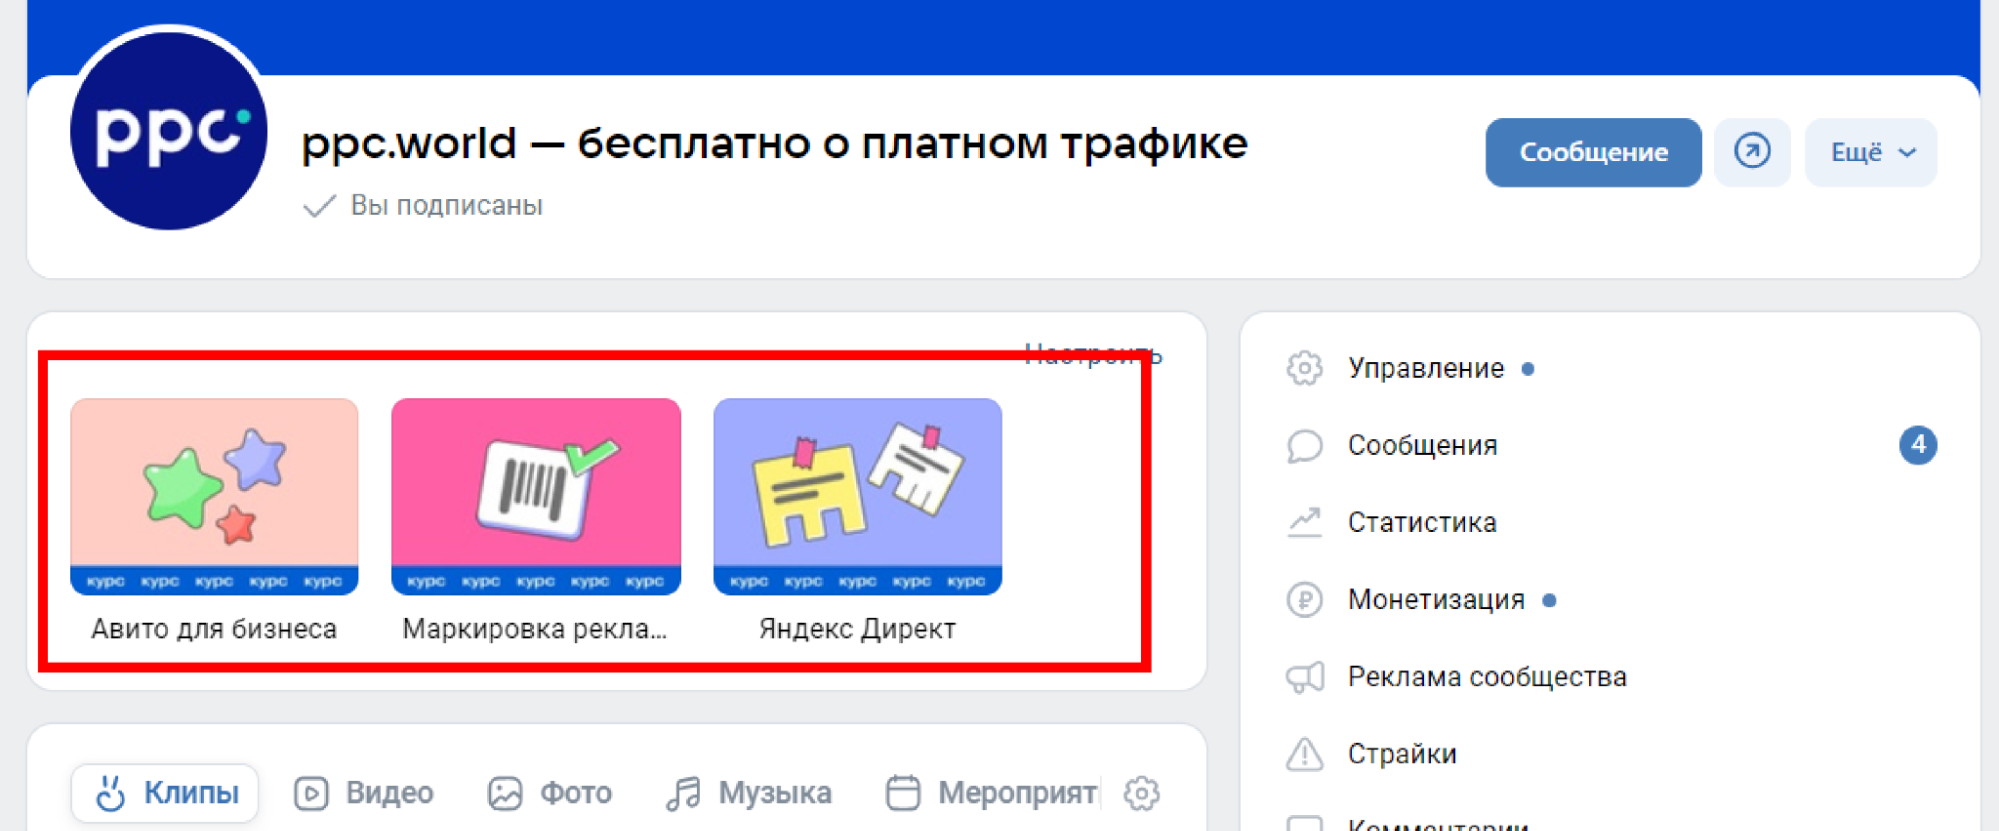 меню сообщества ВКонтакте